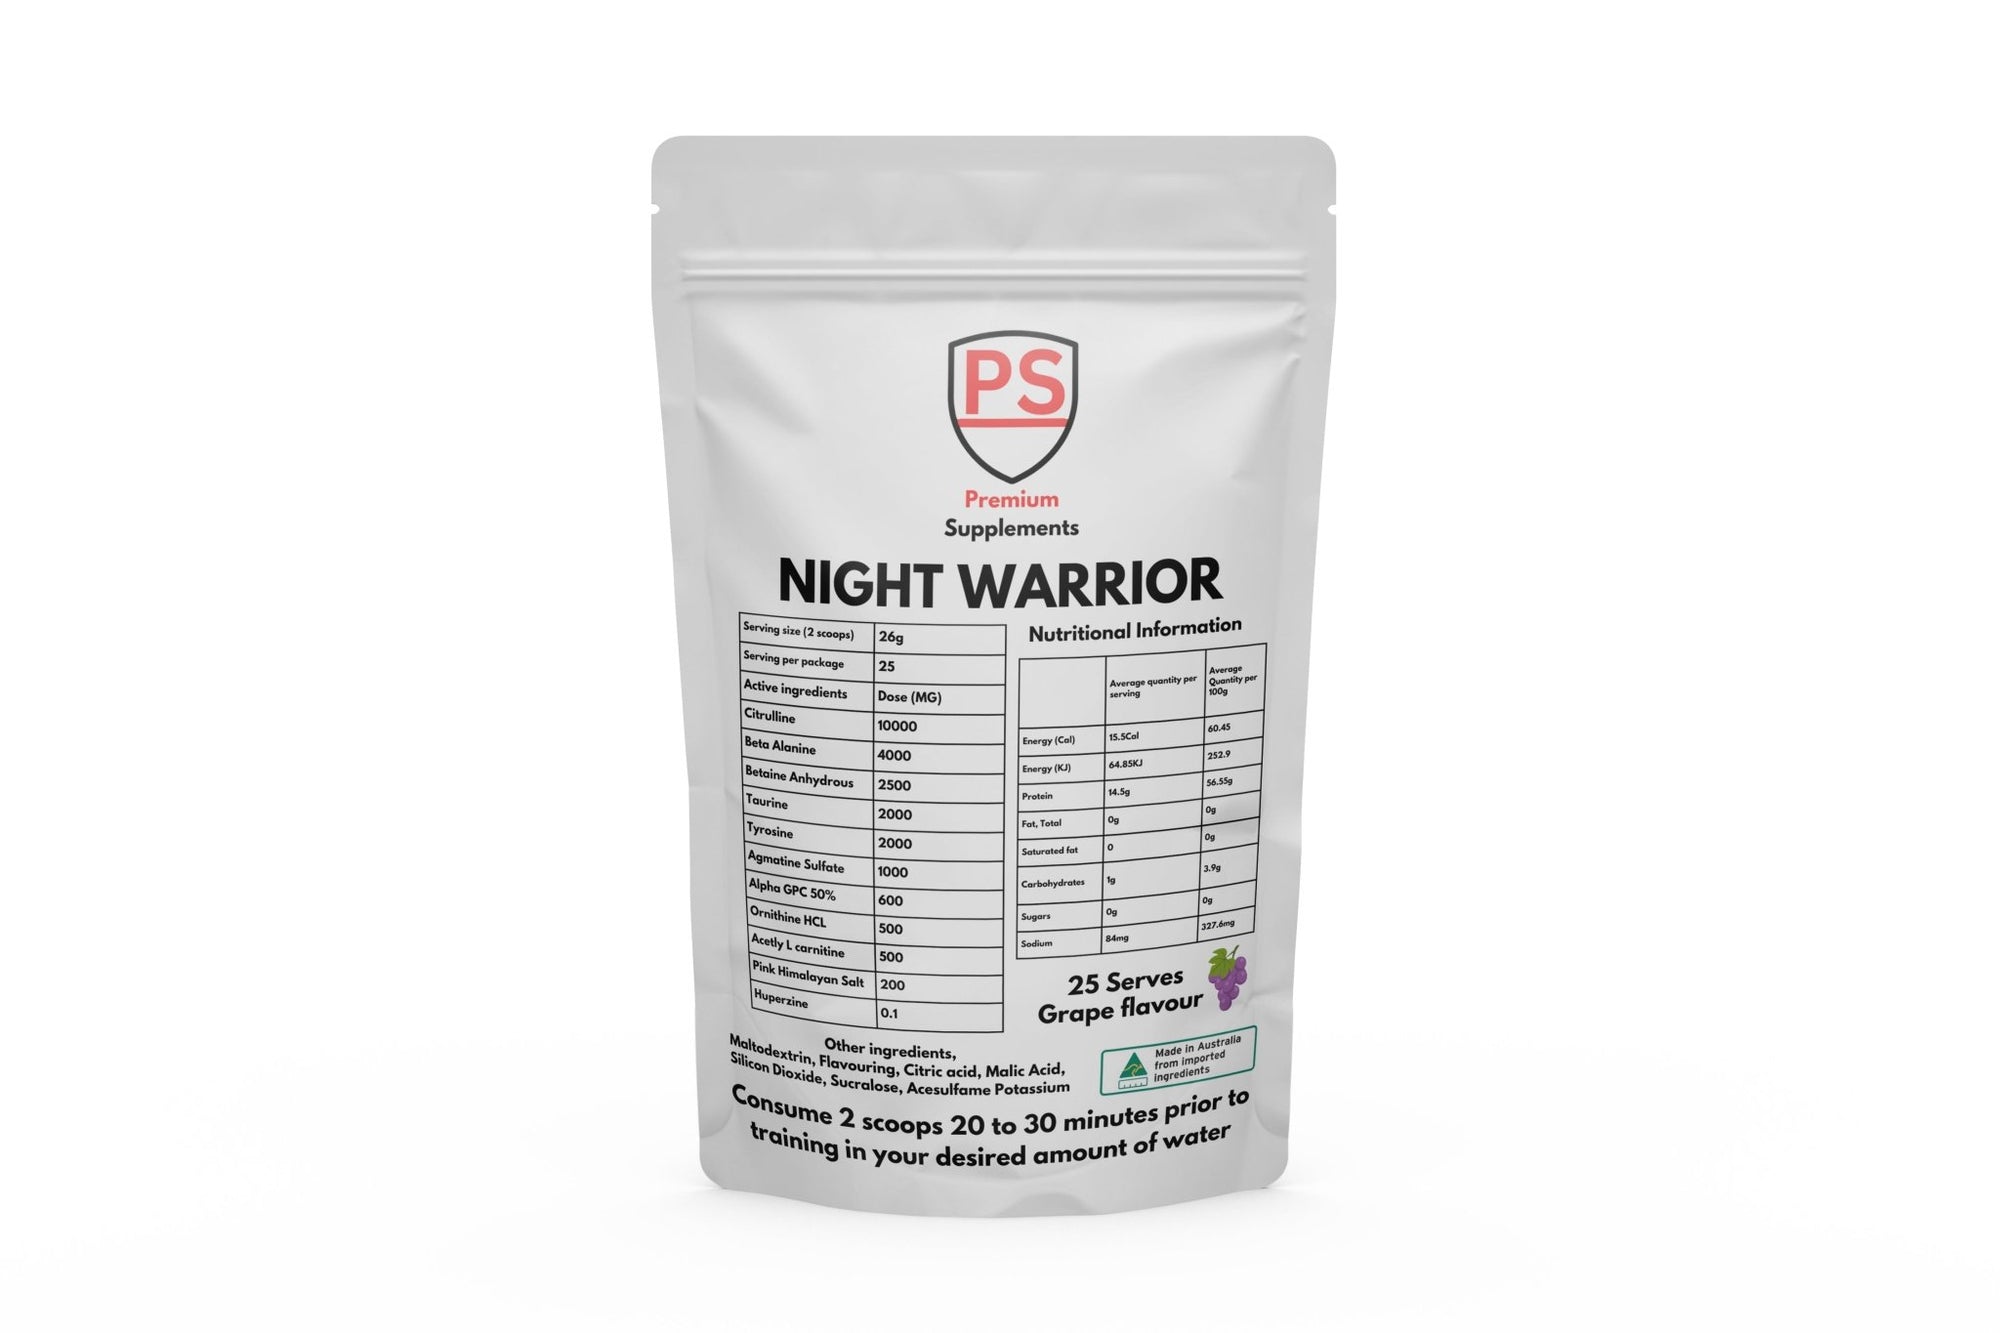 Night warrior stimulant free pre workout - Premiumsupps